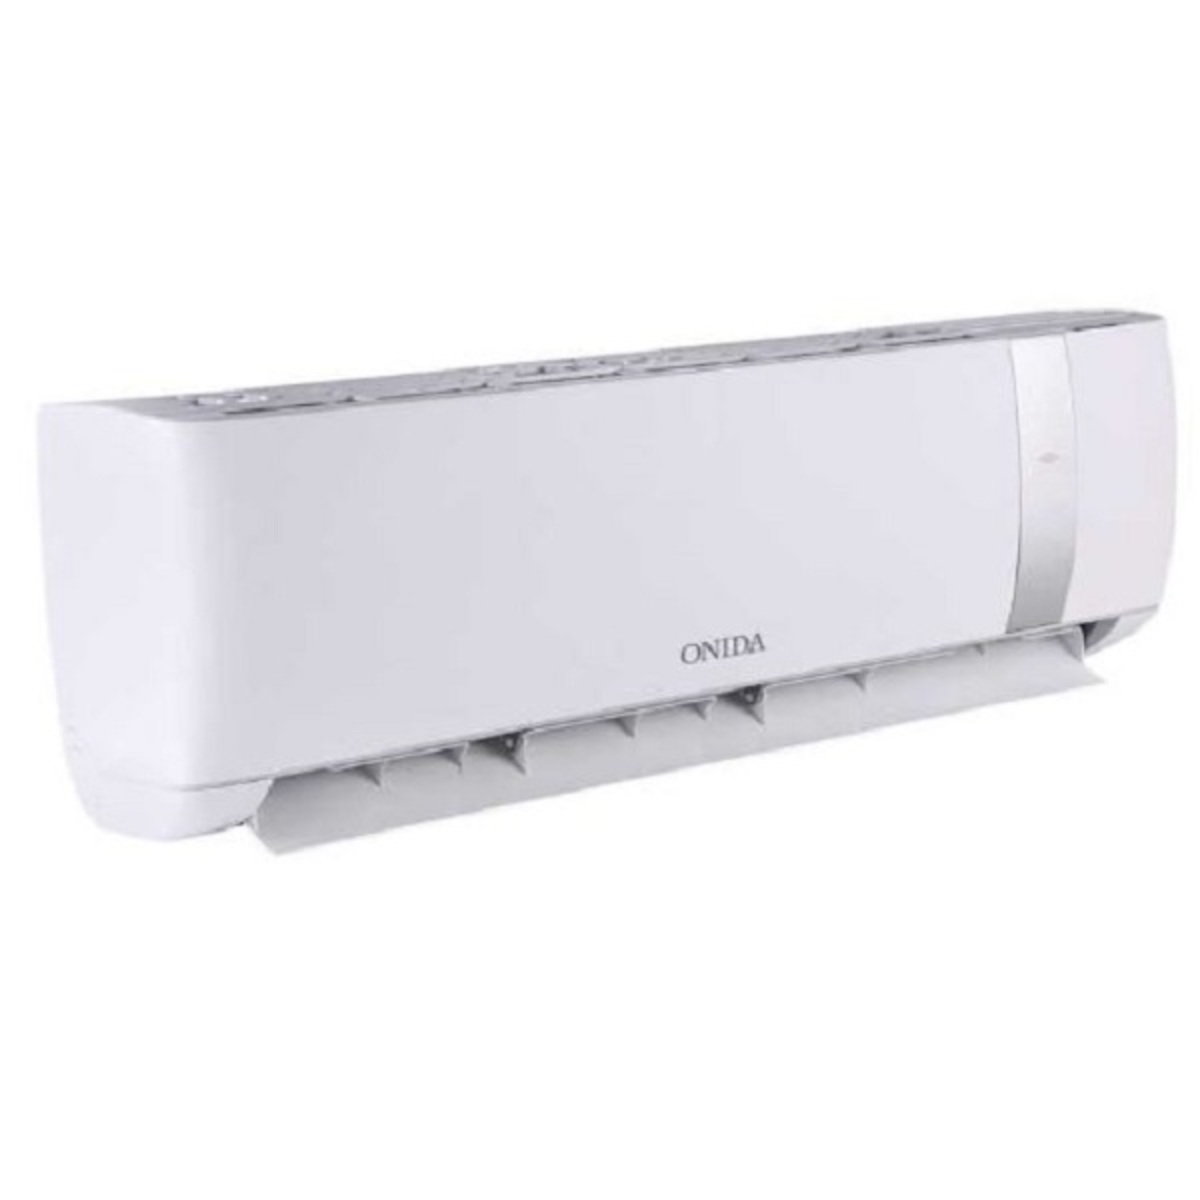 Onida Inverter Air Conditioner IR123 GNO 1 Ton 3*